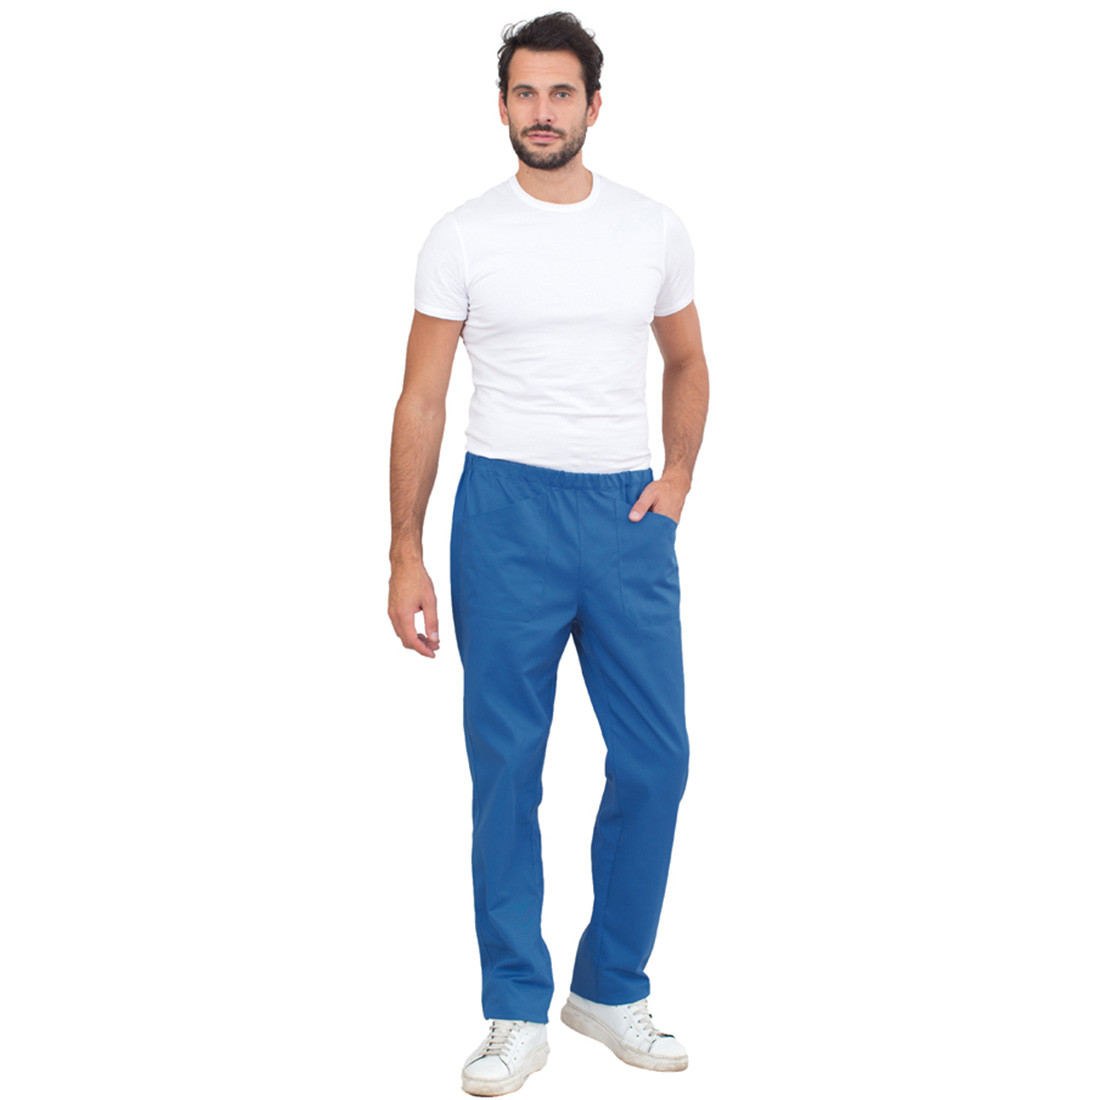 Pantalon chef MILANO - Les vêtements de protection